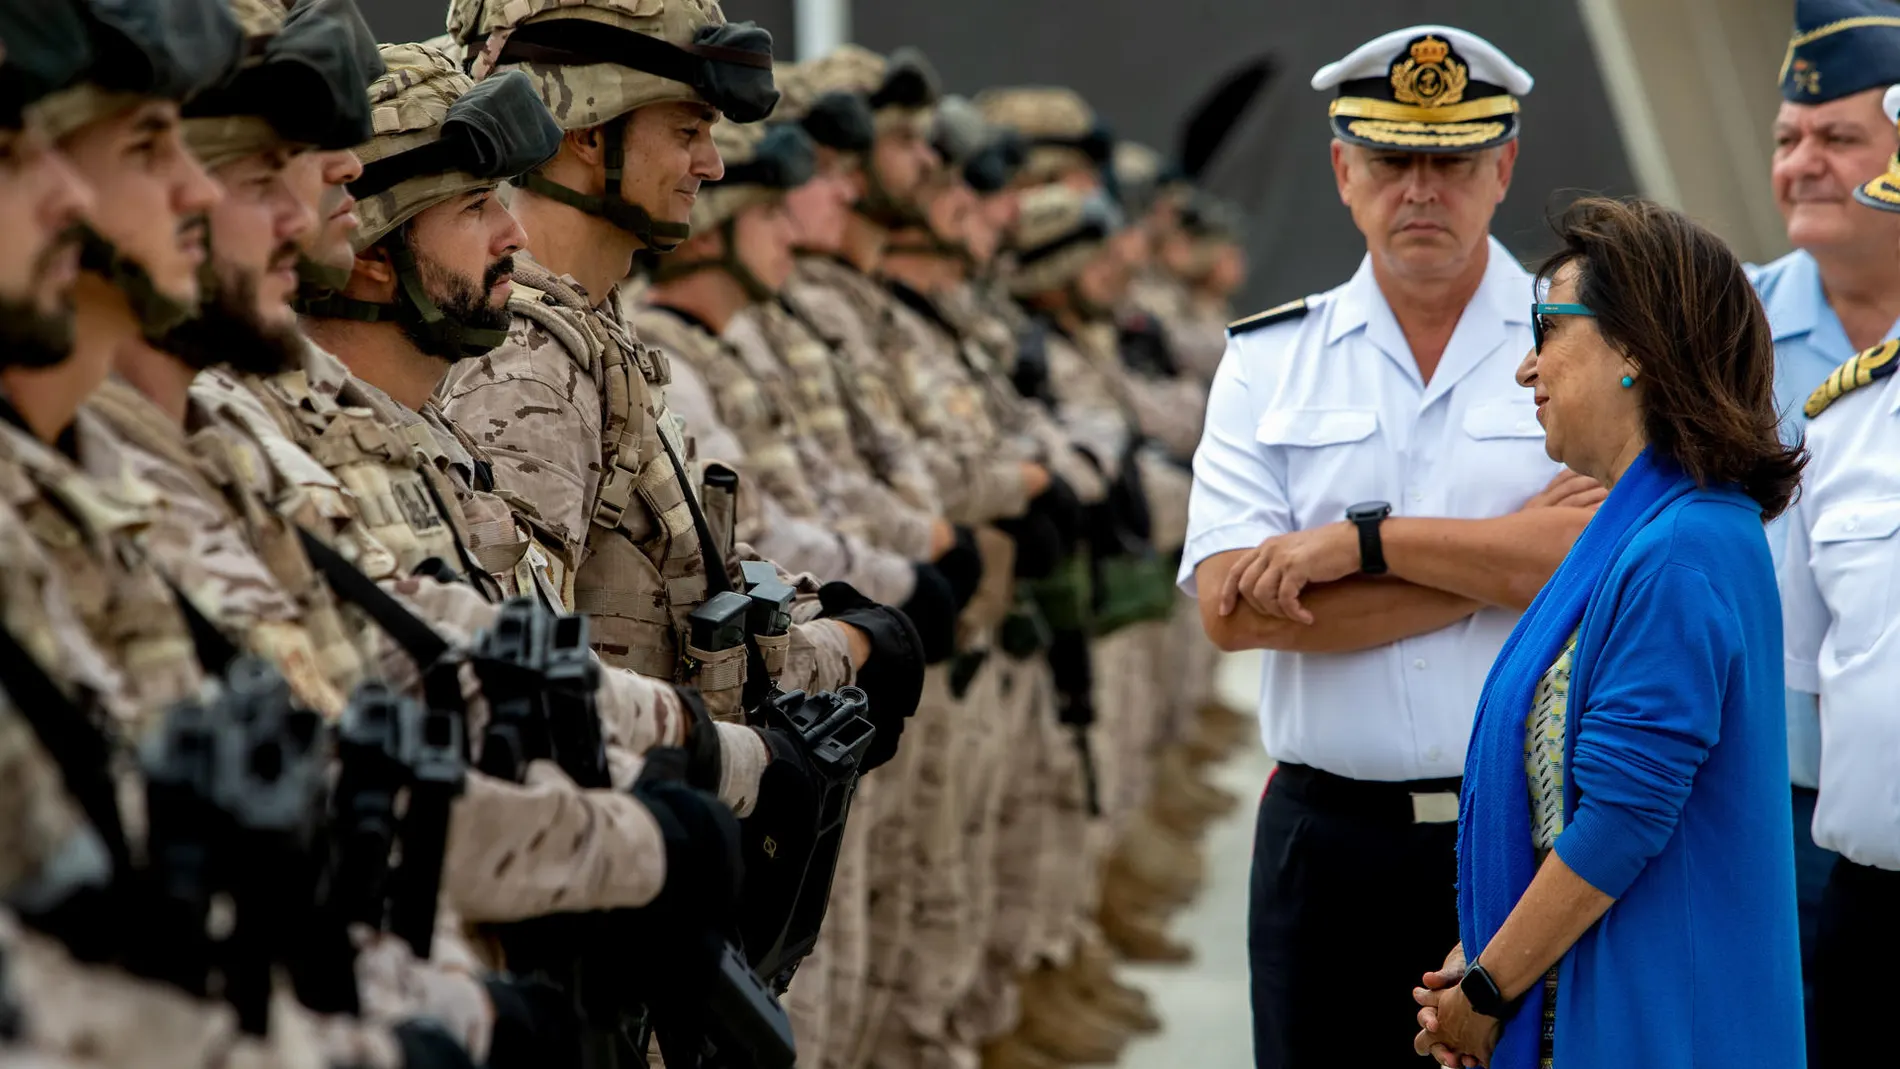 Robles subraya "su orgullo" por la formación y voluntad de servicio del Tercio de Armada en San Fernando